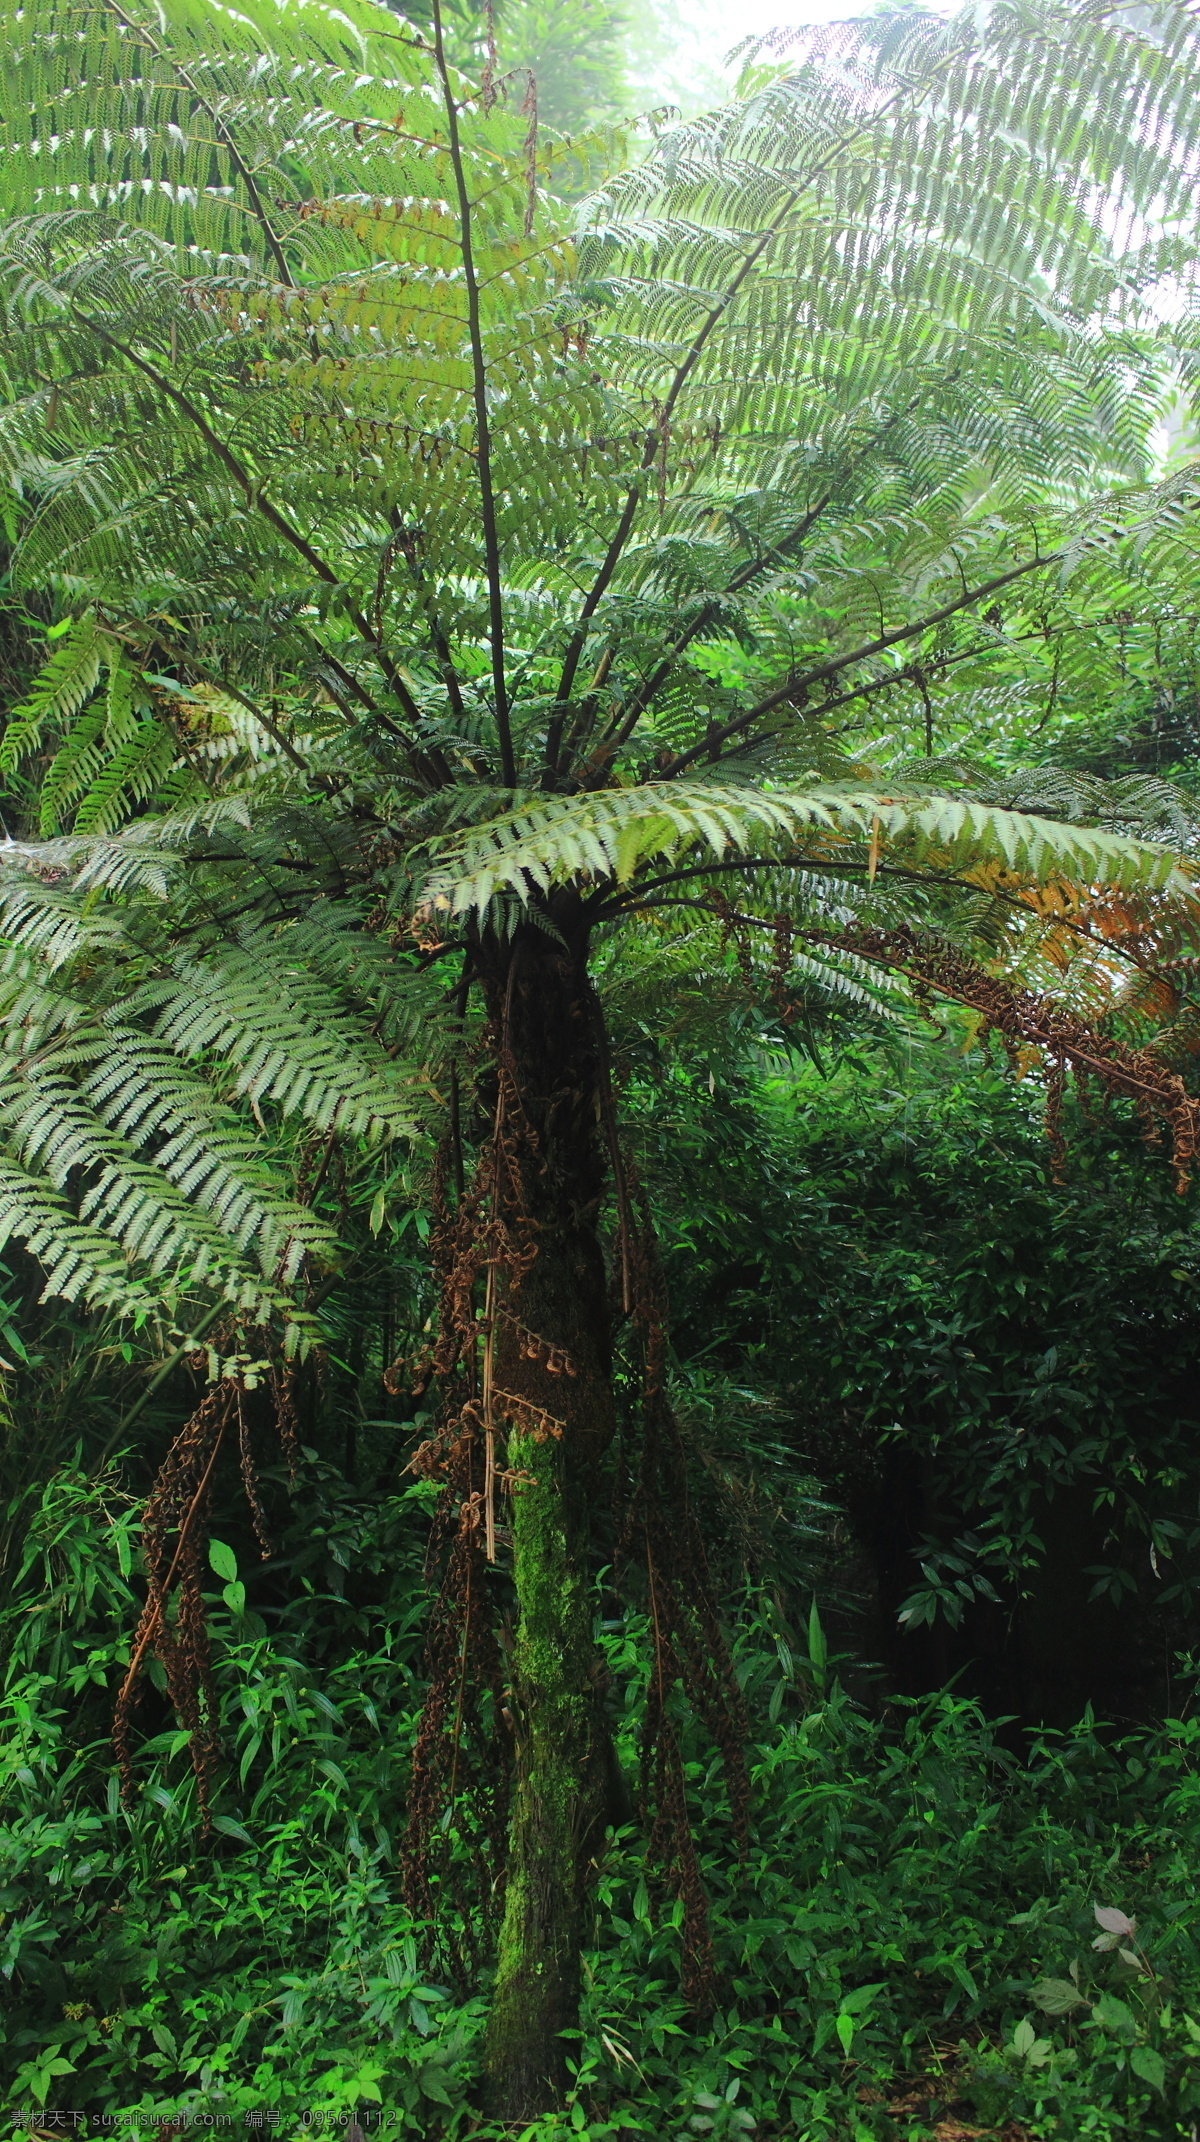 恐龙时代桫椤 桫椤 植物 竹海 恐龙时代存在 绿色 大型蕨类植物 生物世界 花草